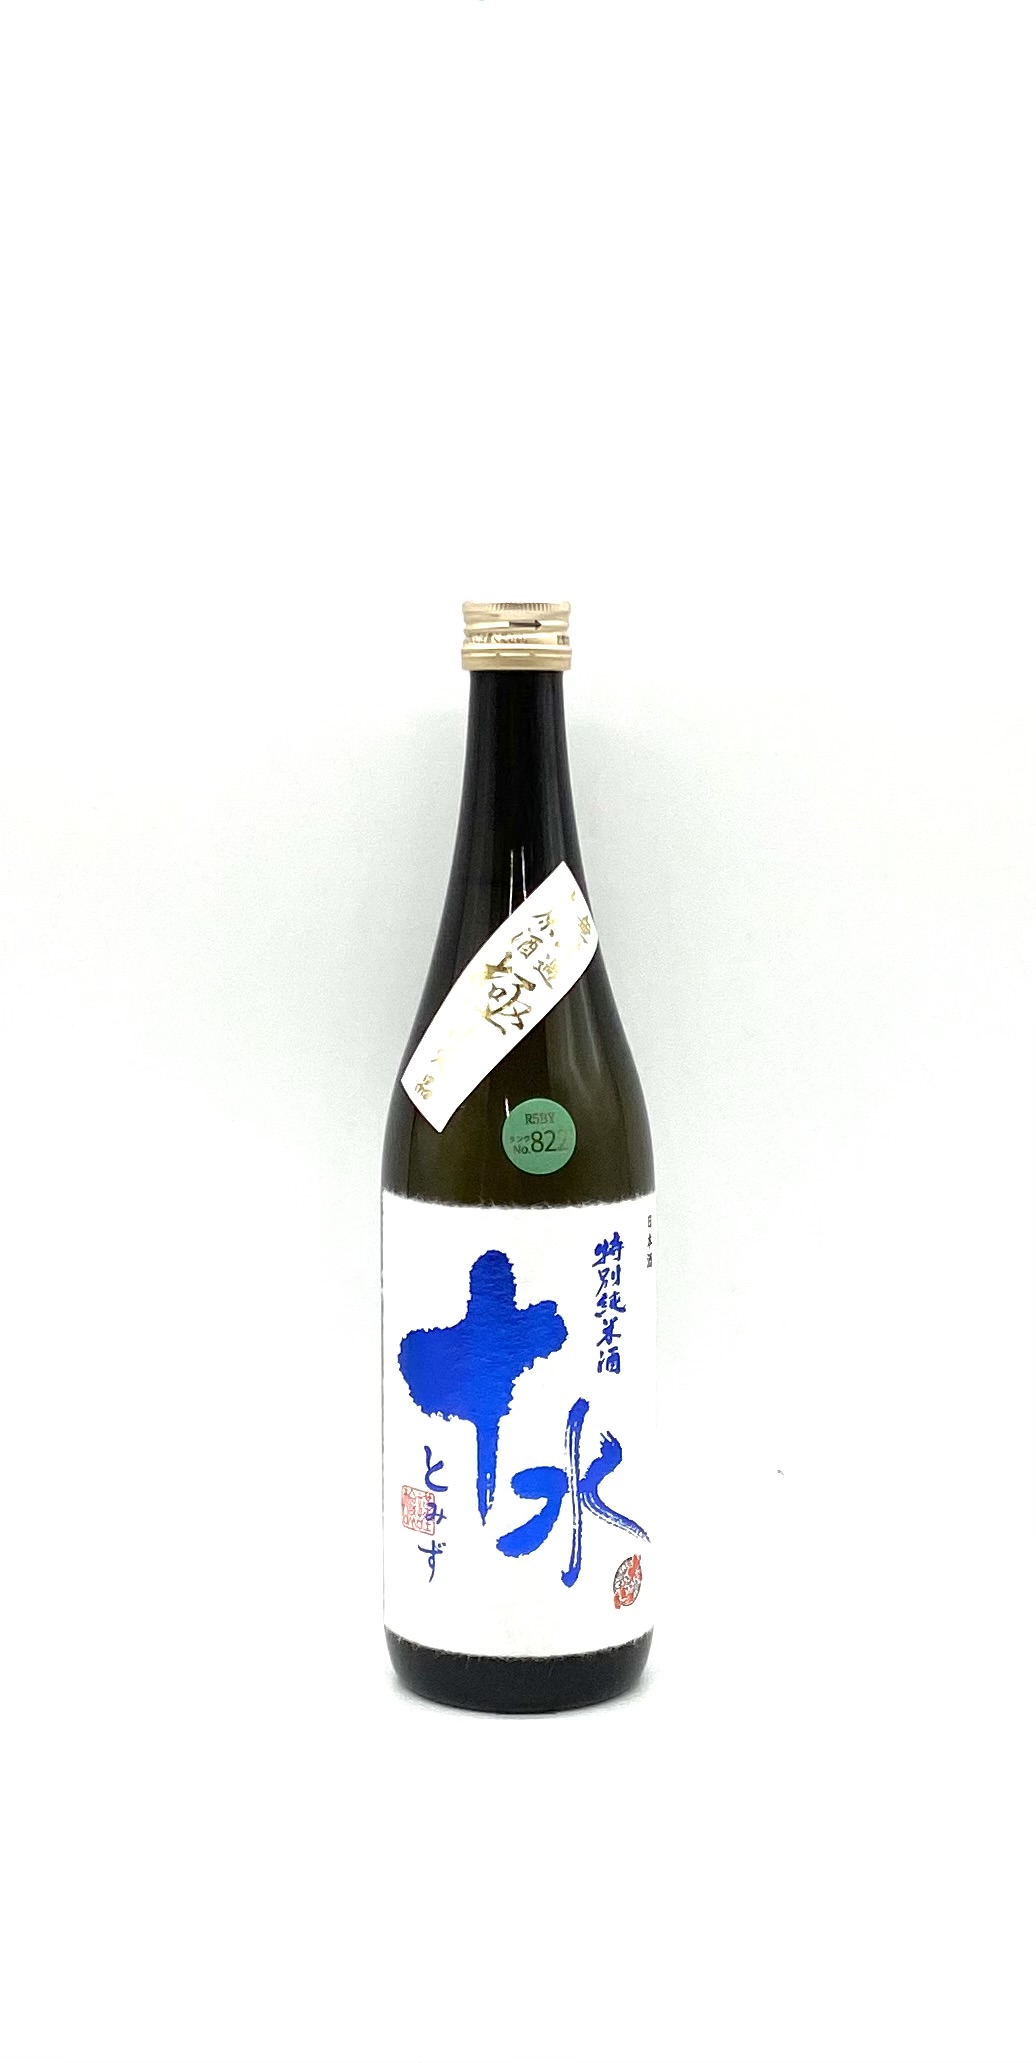 ルイナール ロゼ セカンド・スキン 750ml | 酒のいろは | 日本酒・焼酎